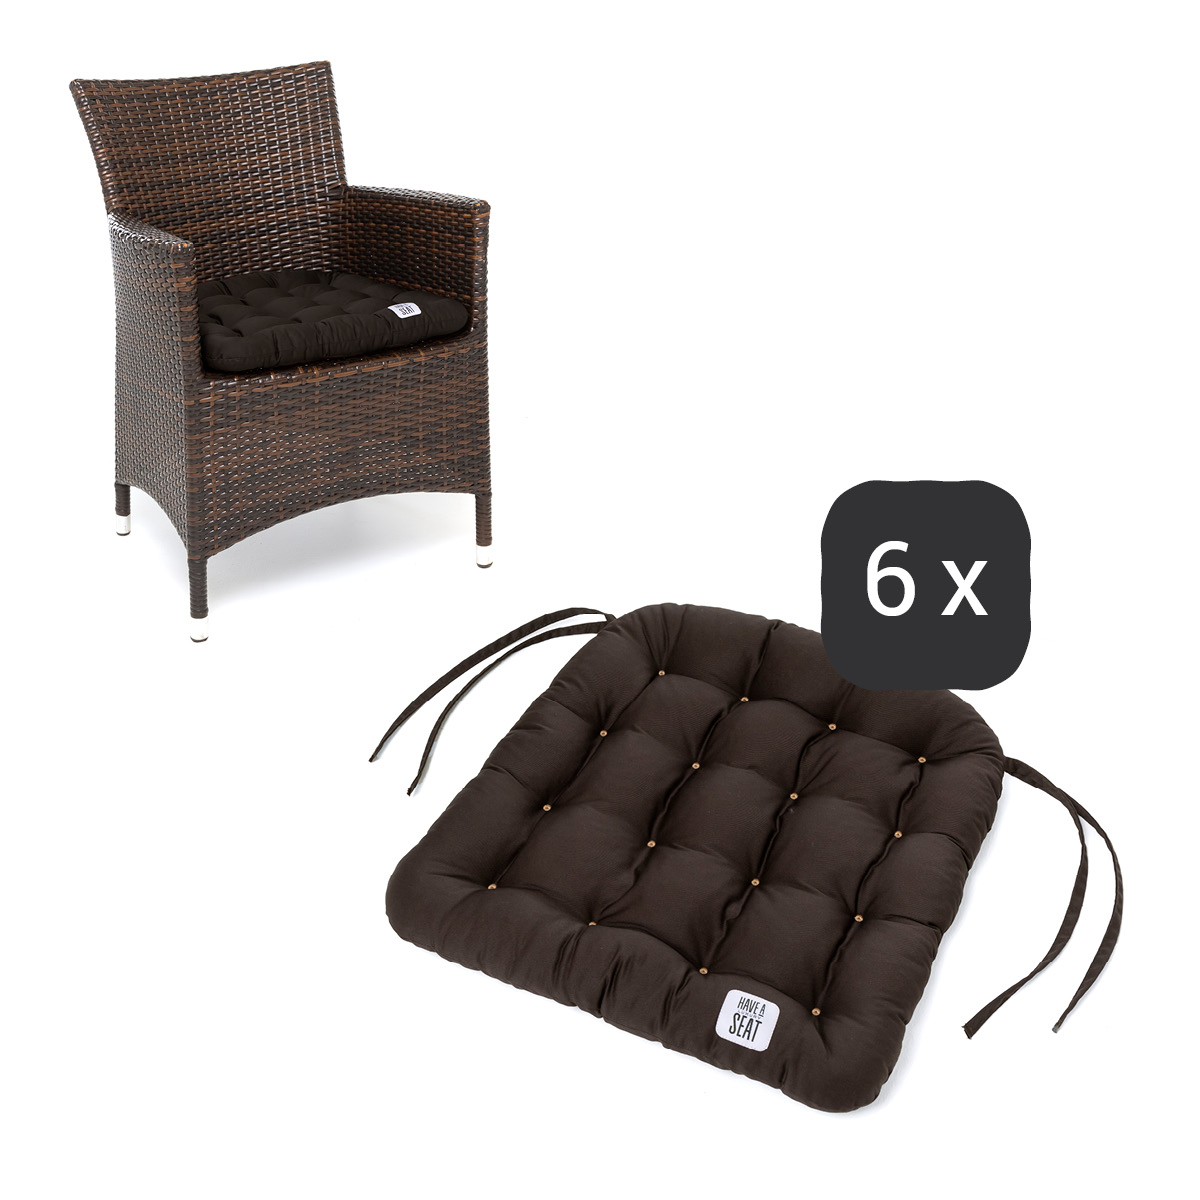 Sitzkissen für Rattanstühle 48x46 cm | Braun | 6er Set | Premium-Sitzkomfort | Indoor / Outdoor | waschbar bis 95°C | HAVE A SEAT Living